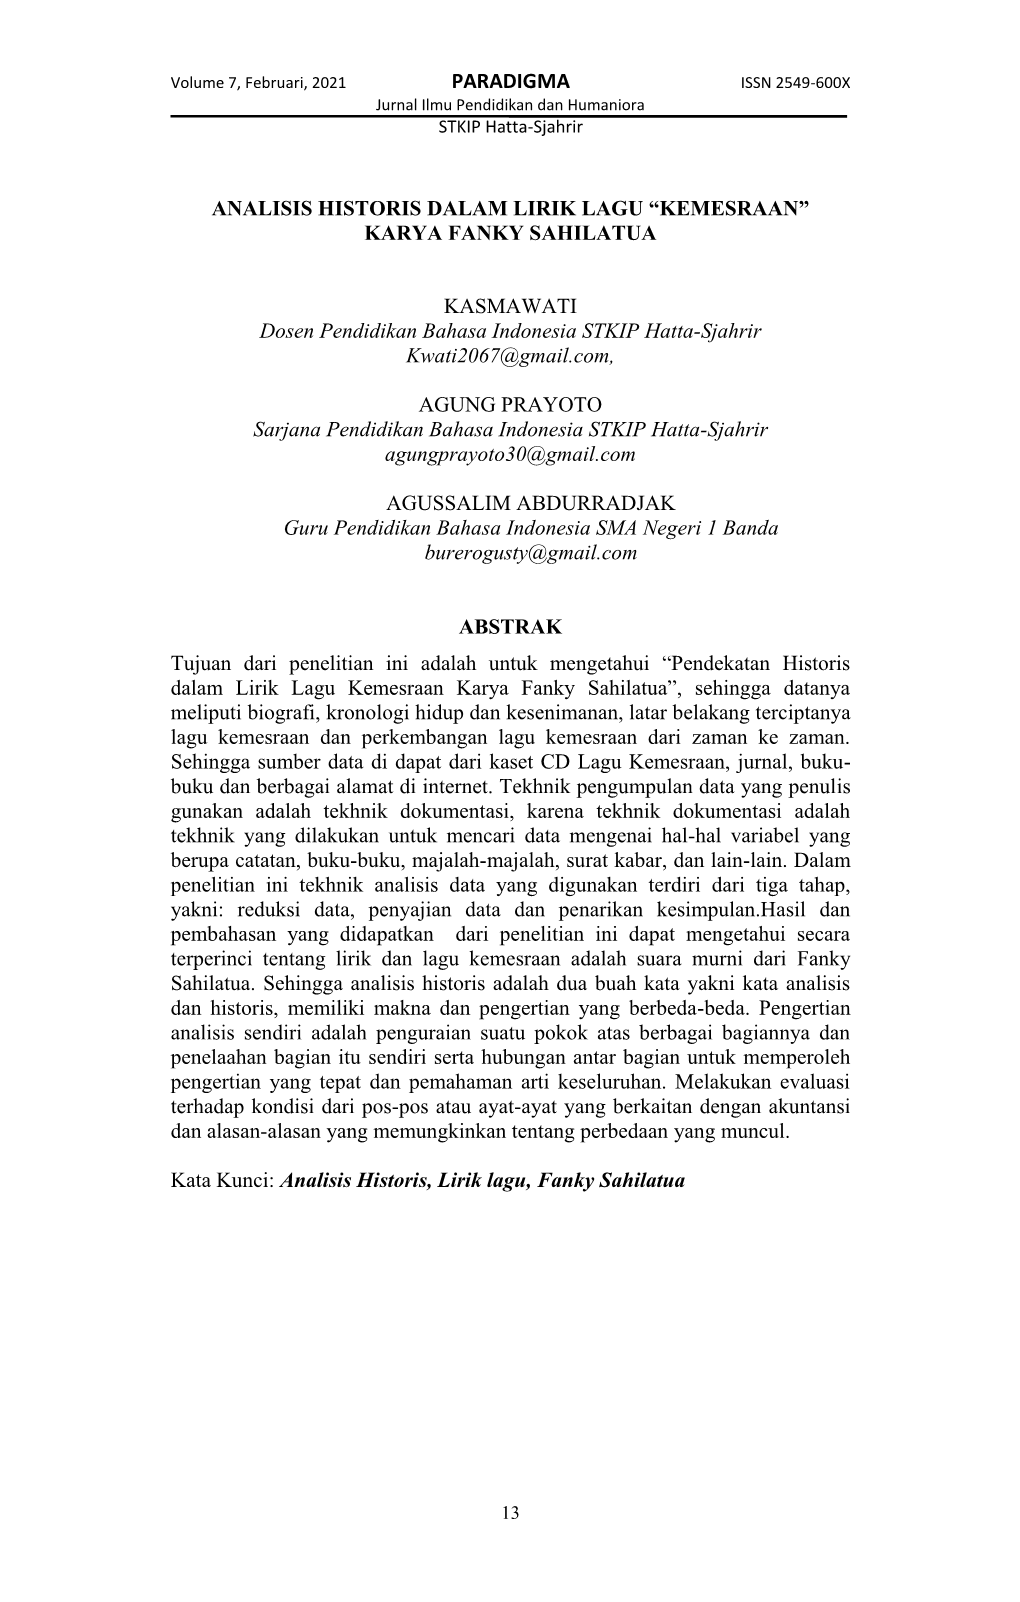 PARADIGMA ISSN 2549-600X Jurnal Ilmu Pendidikan Dan Humaniora STKIP Hatta-Sjahrir